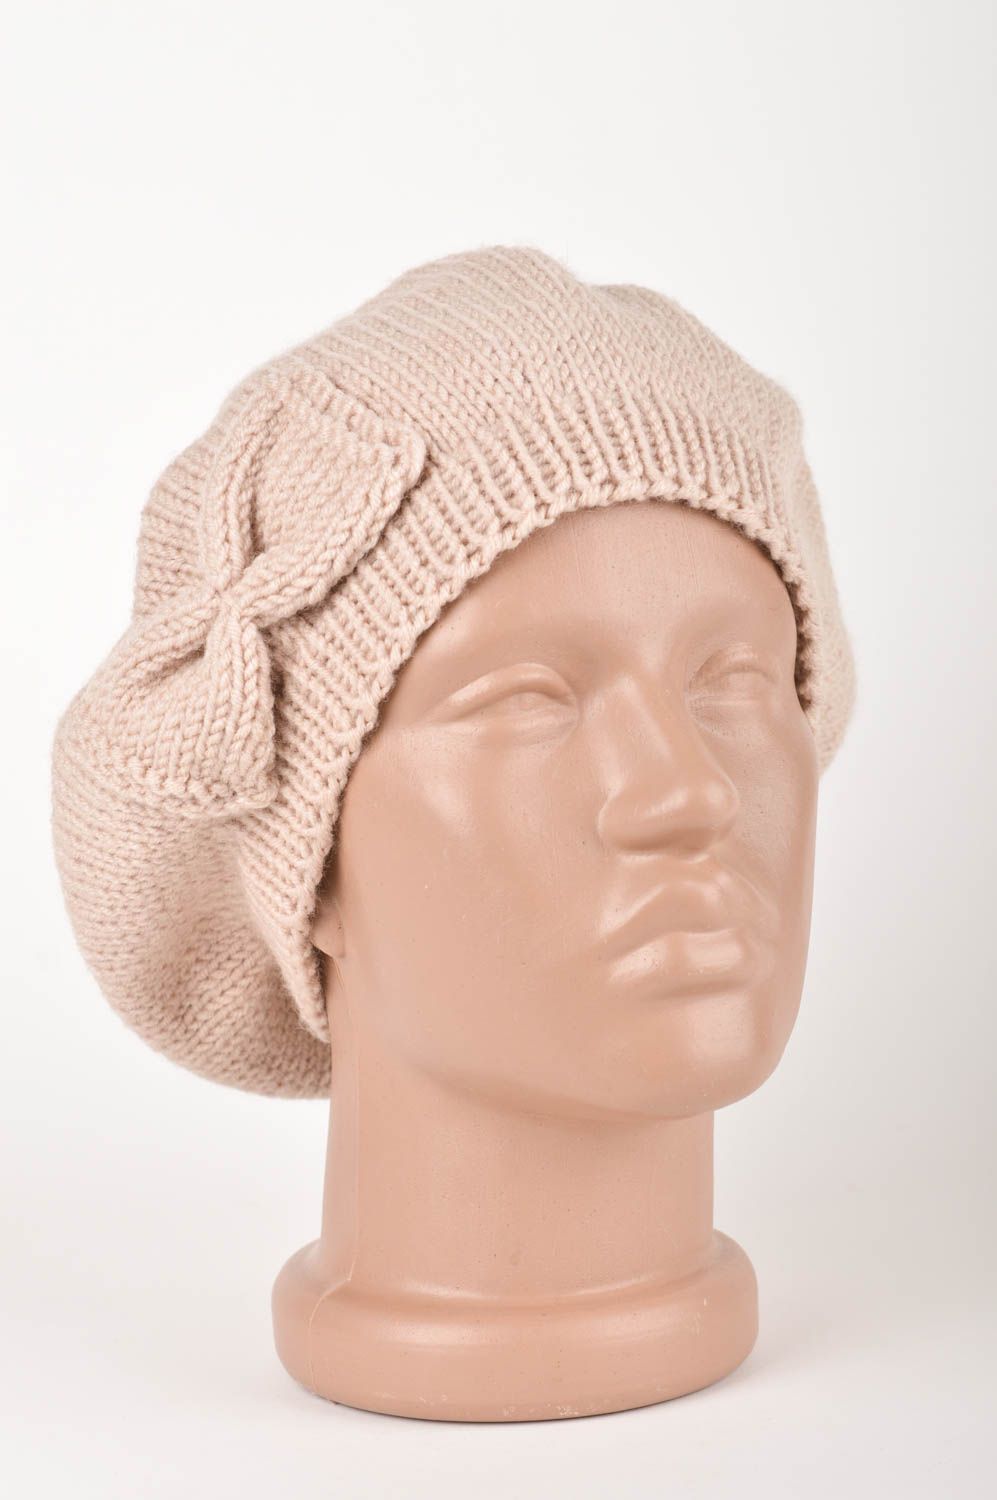 Handmade crocheted beret warm unusual cap crocheted headwear for women photo 1